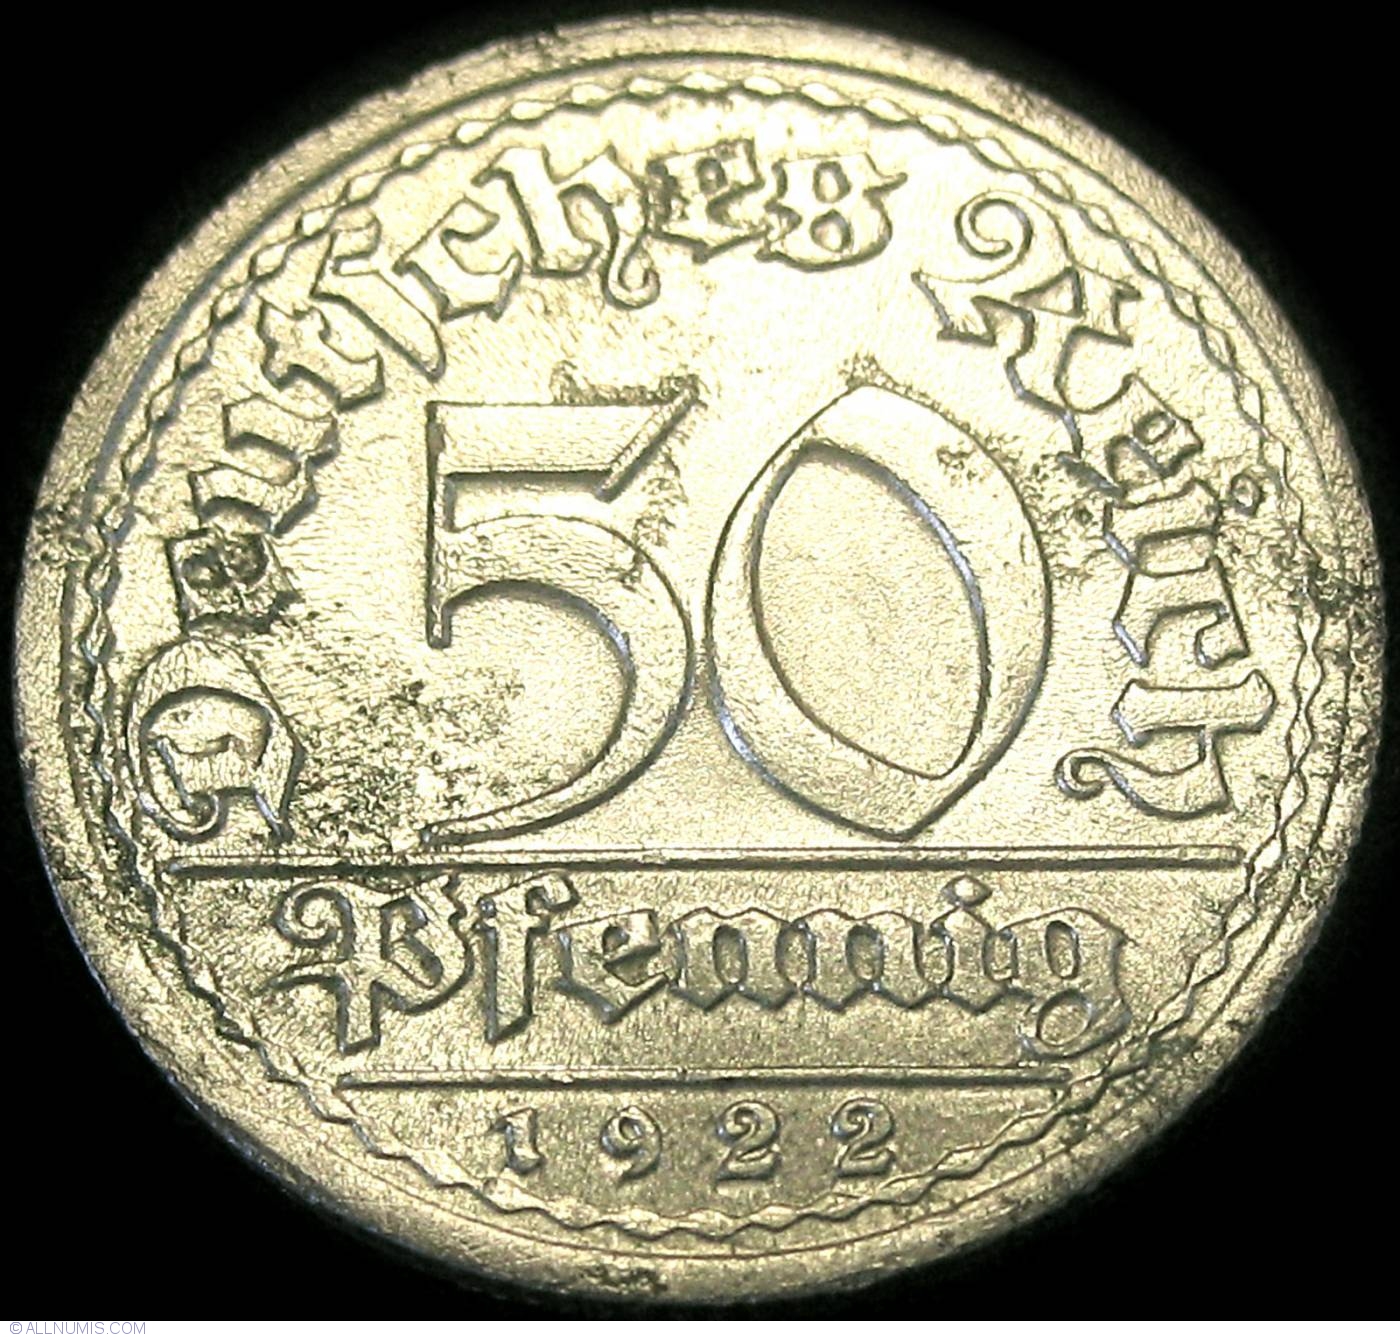 50 Pfennig 1922 J, Weimar Republic (1919-1932) - Germany - Coin - 23510